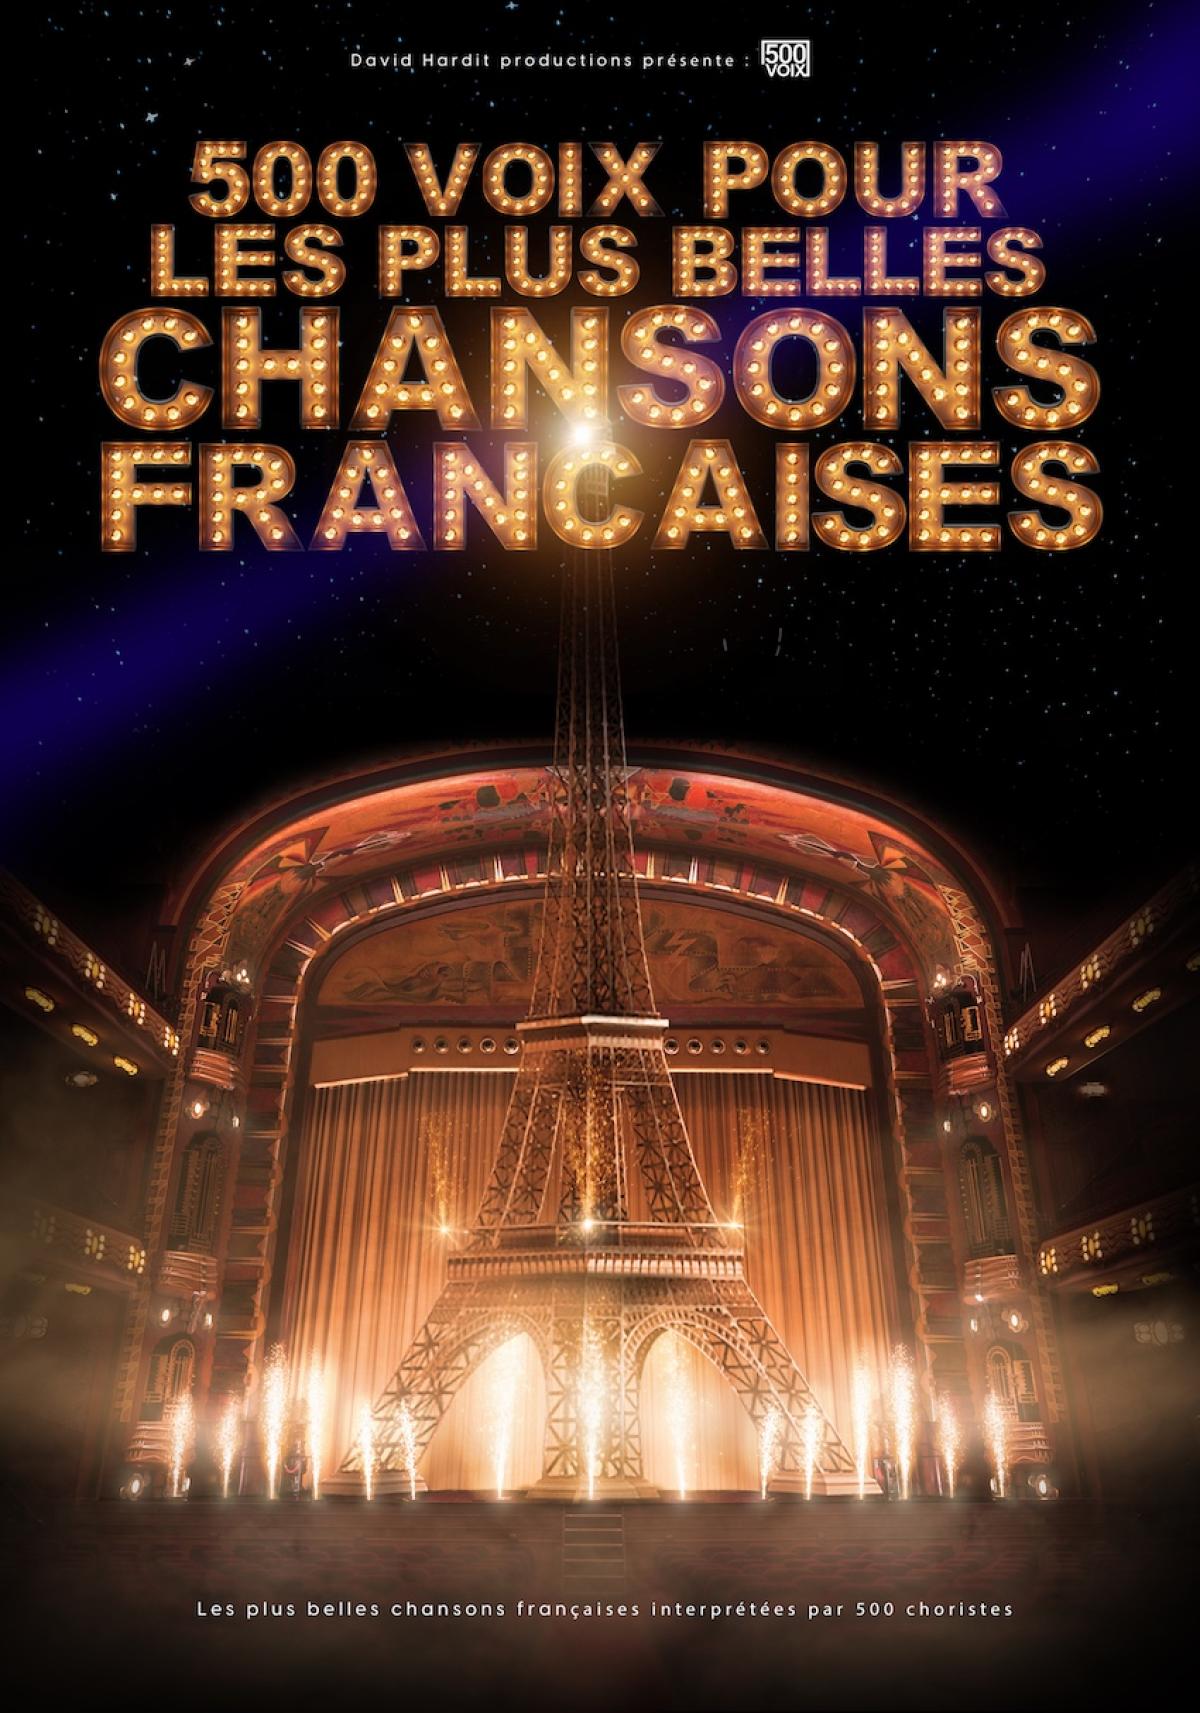 500 Voix Pour Les Plus Belles Chansons al Arena Loire Tickets